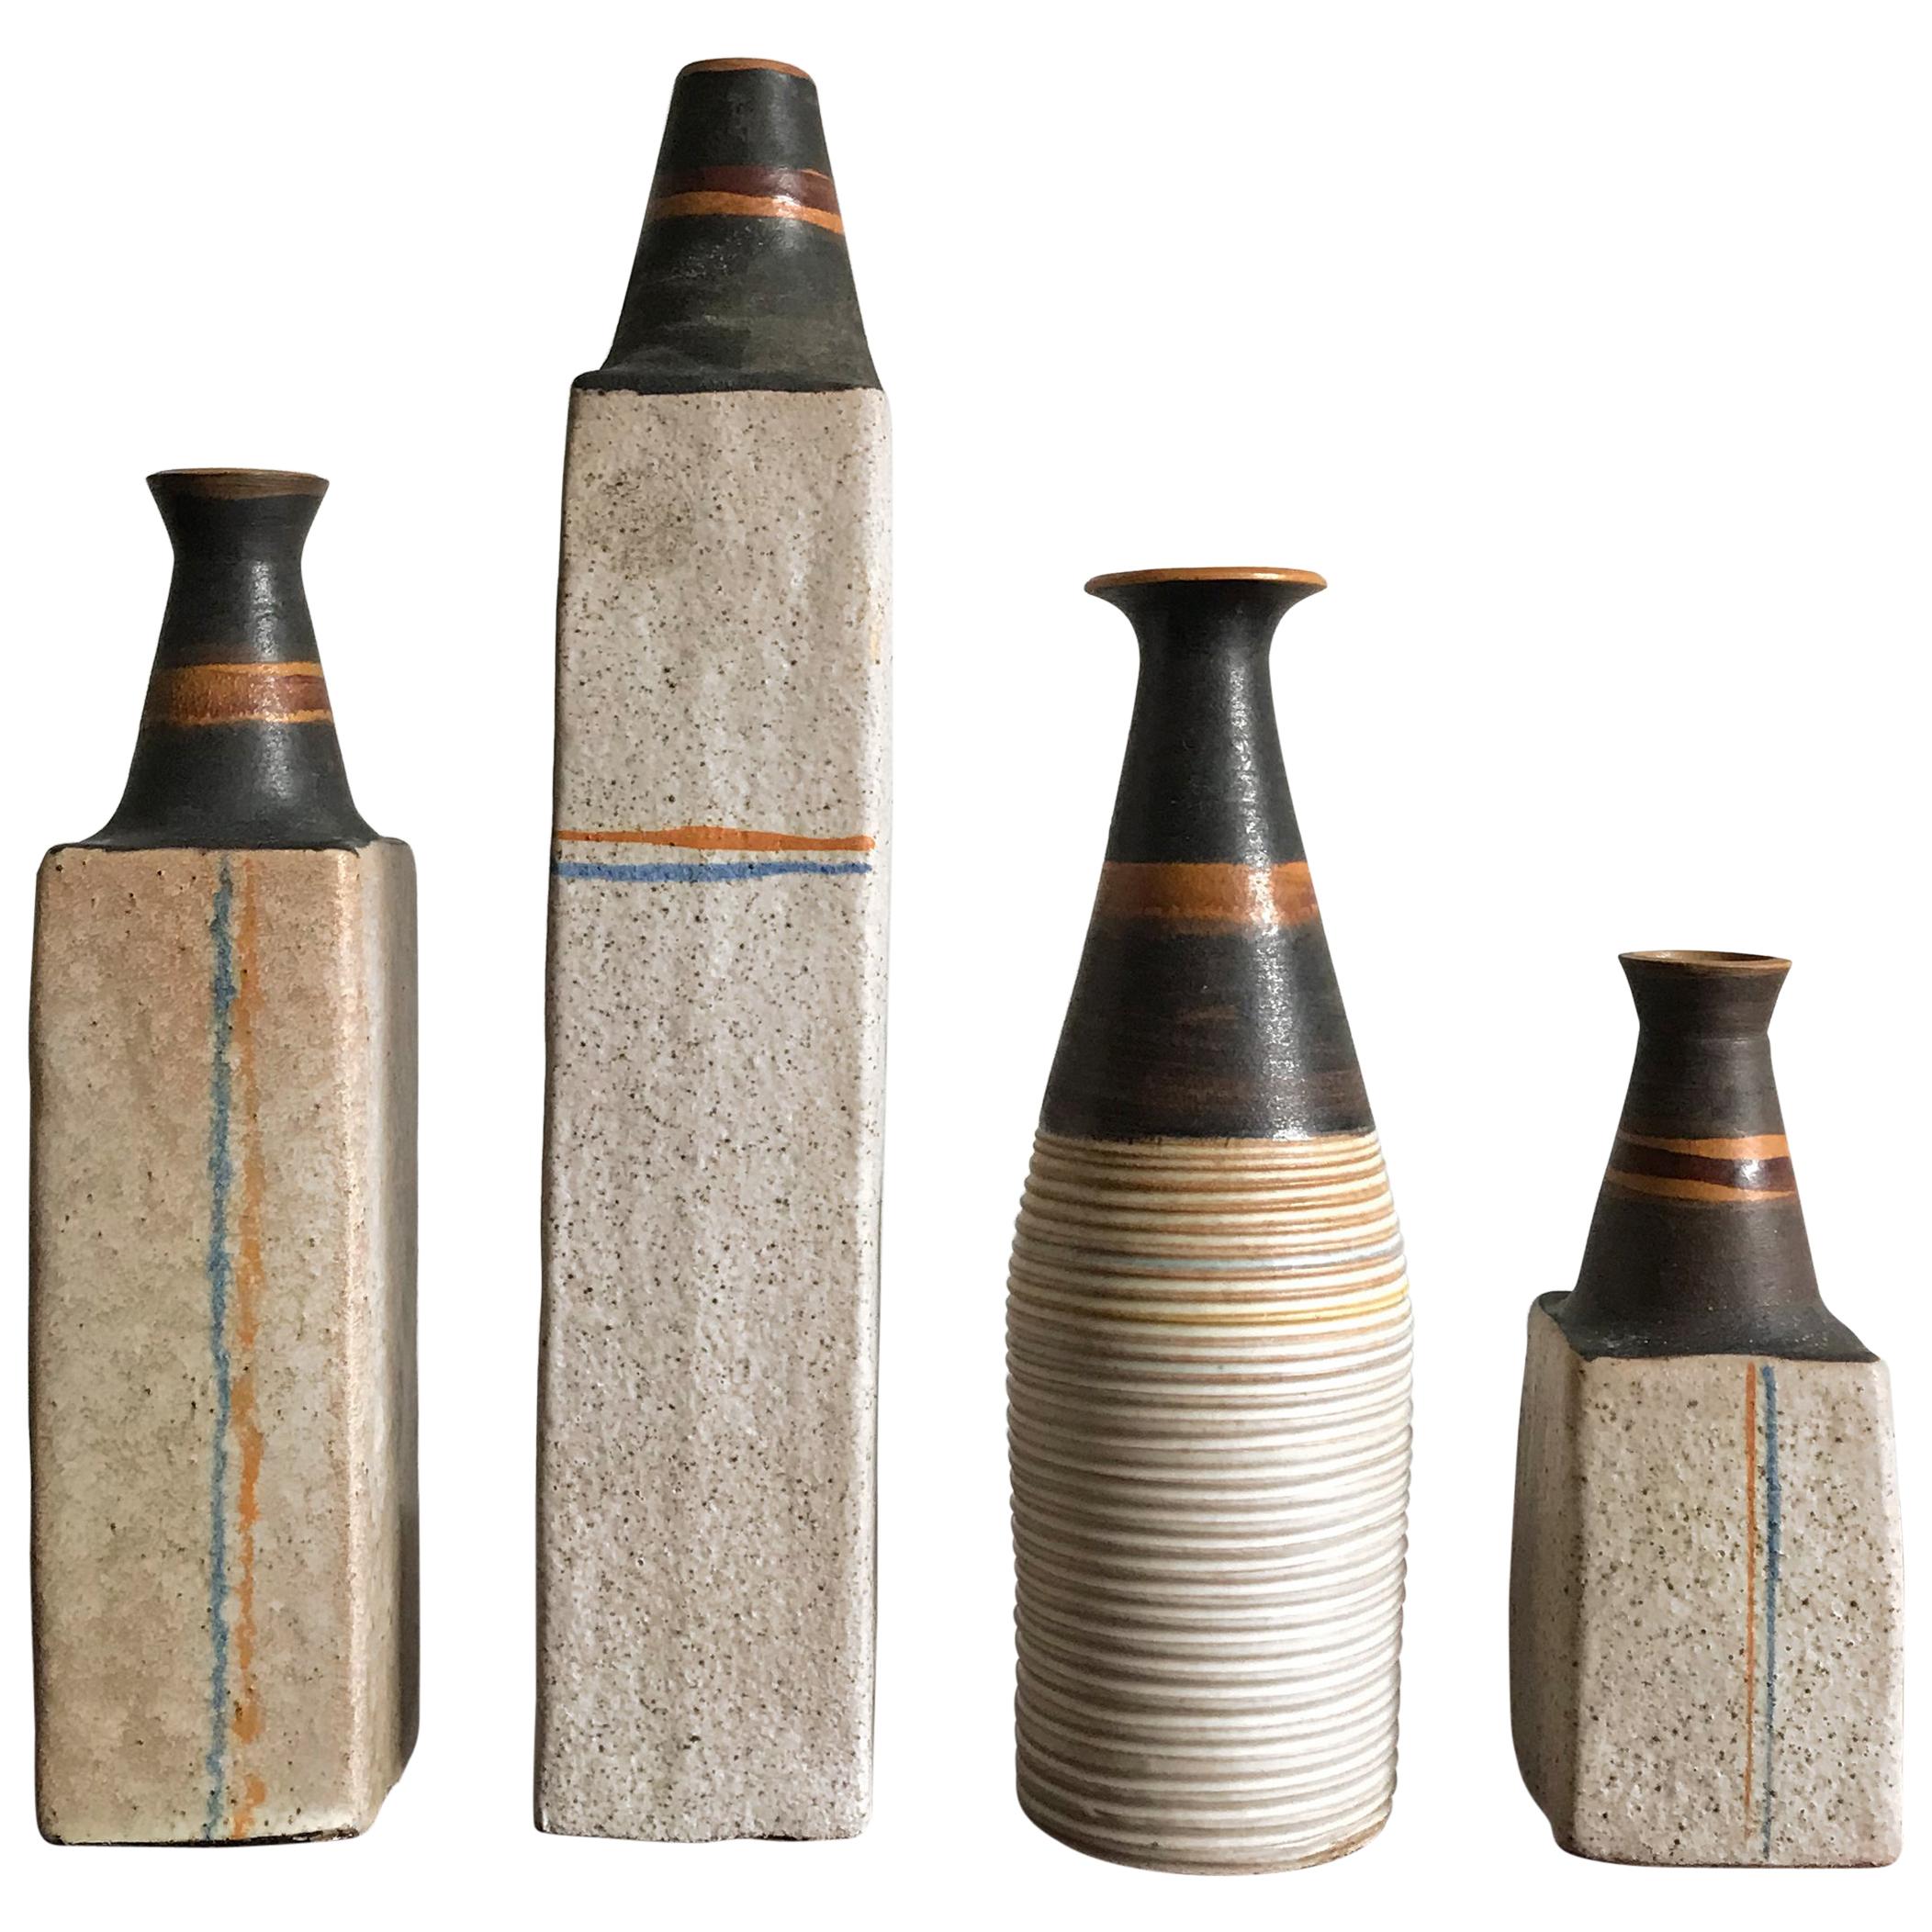 Italienisches Keramikvasen-Flaschen-Set von Ivo Sassi, Mid-Century Modern Design, 1950er Jahre